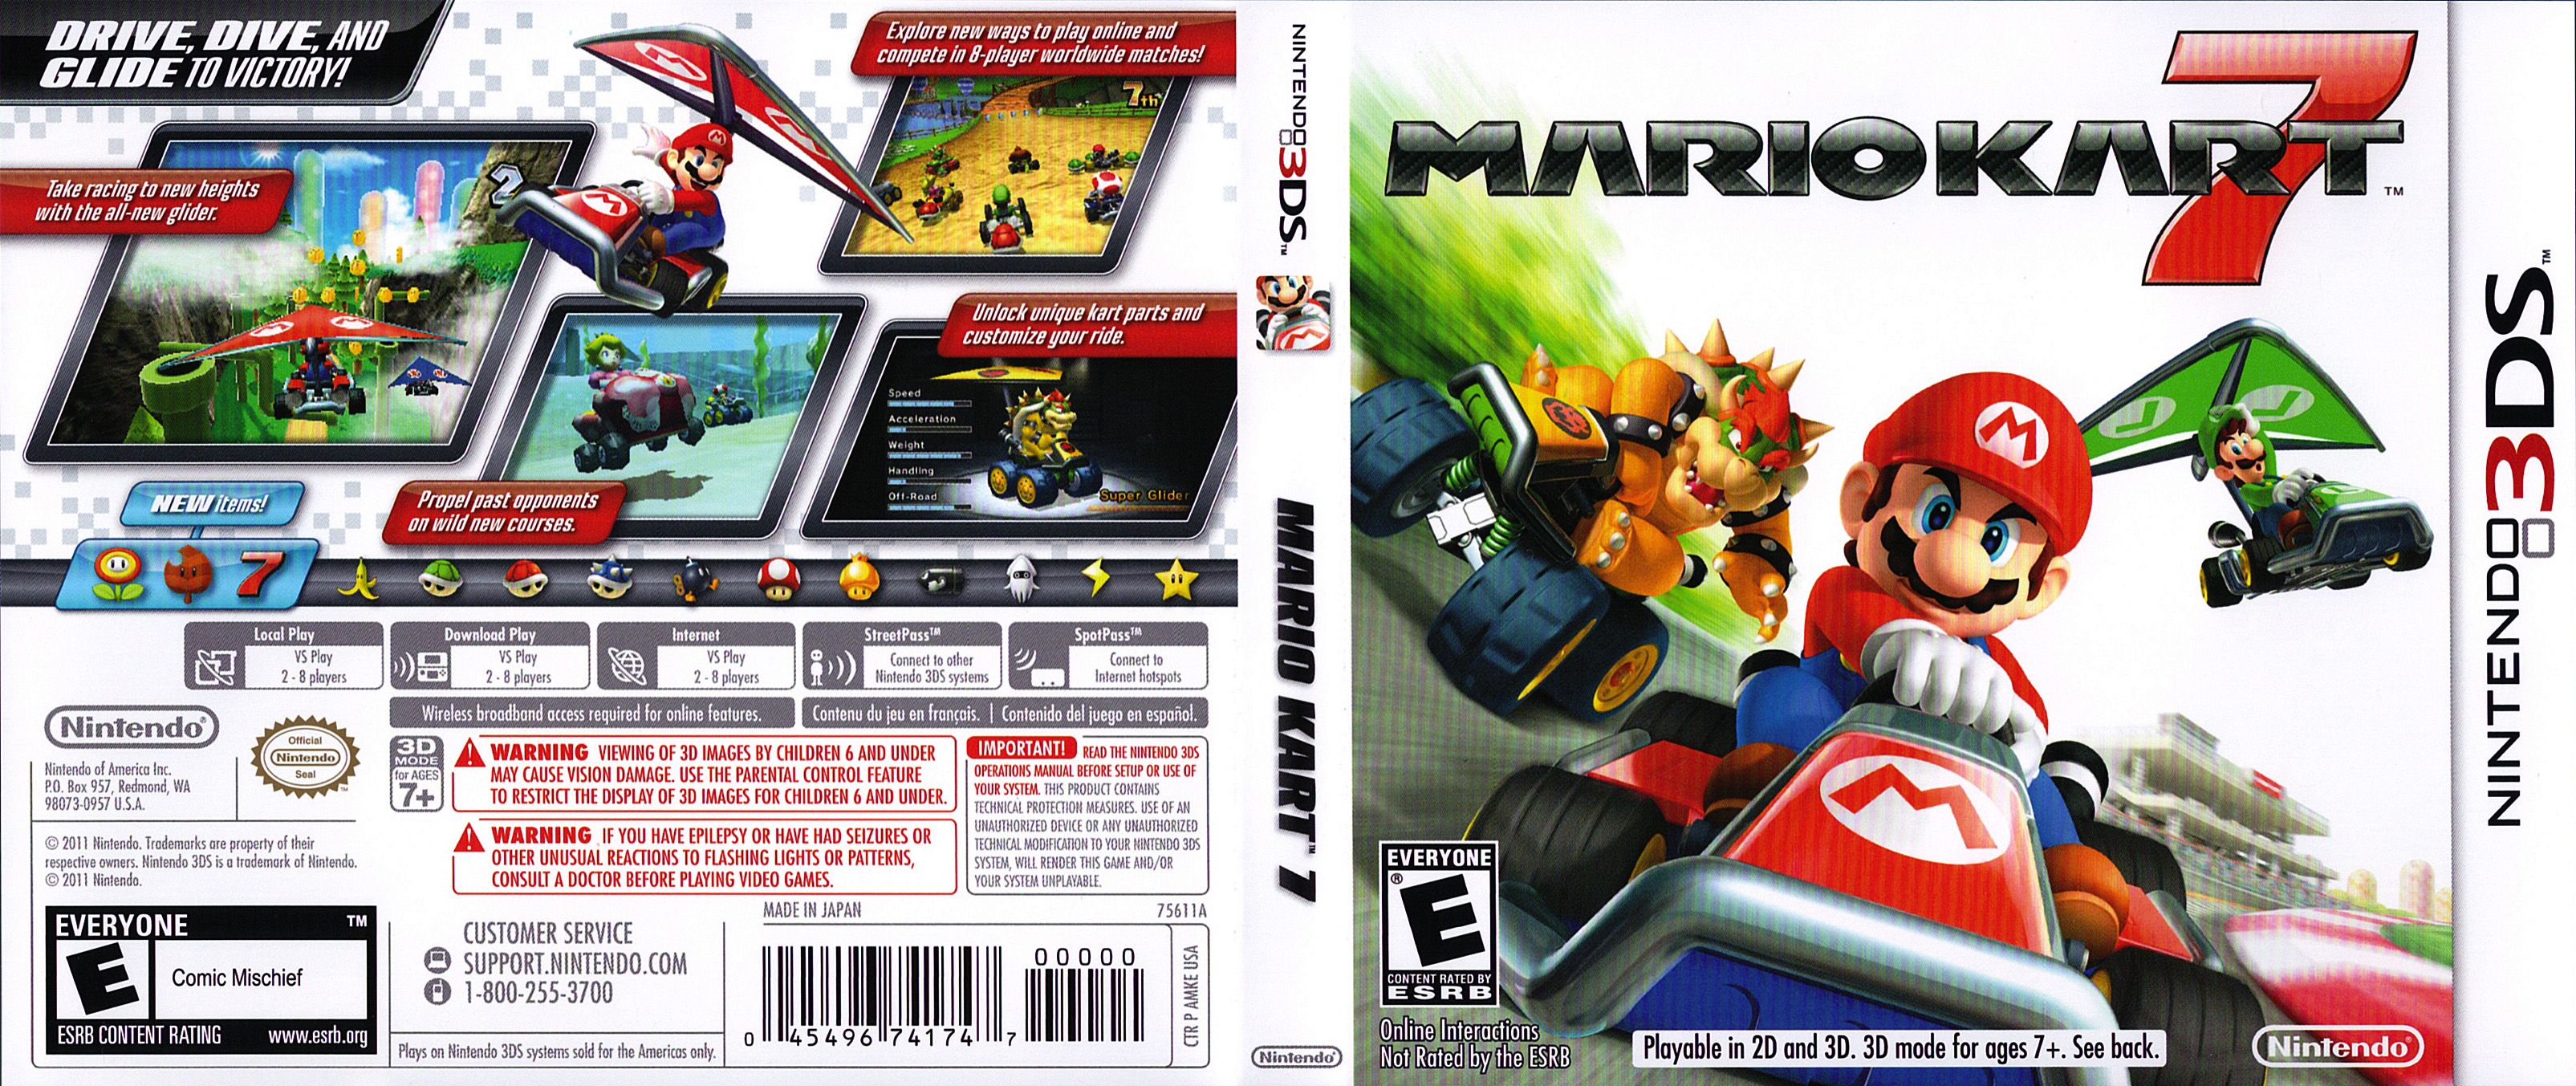 Best Games Wallpaper: Mario Kart Games